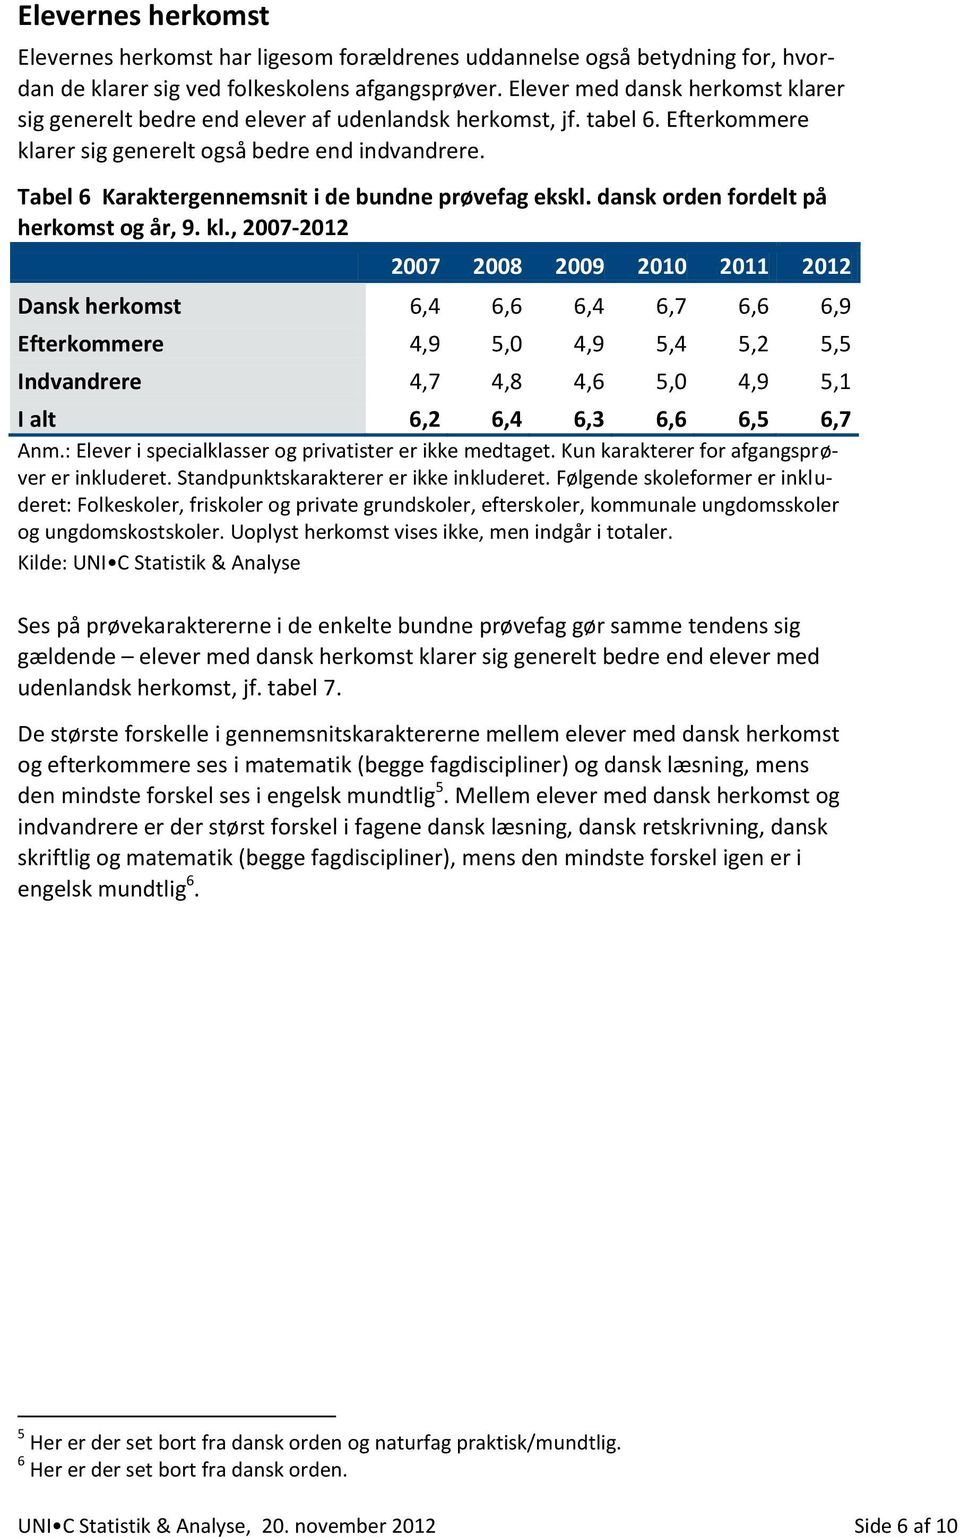 Tabel 6 Karaktergennemsnit i de bundne prøvefag ekskl. dansk orden fordelt på herkomst og år, 9. kl.